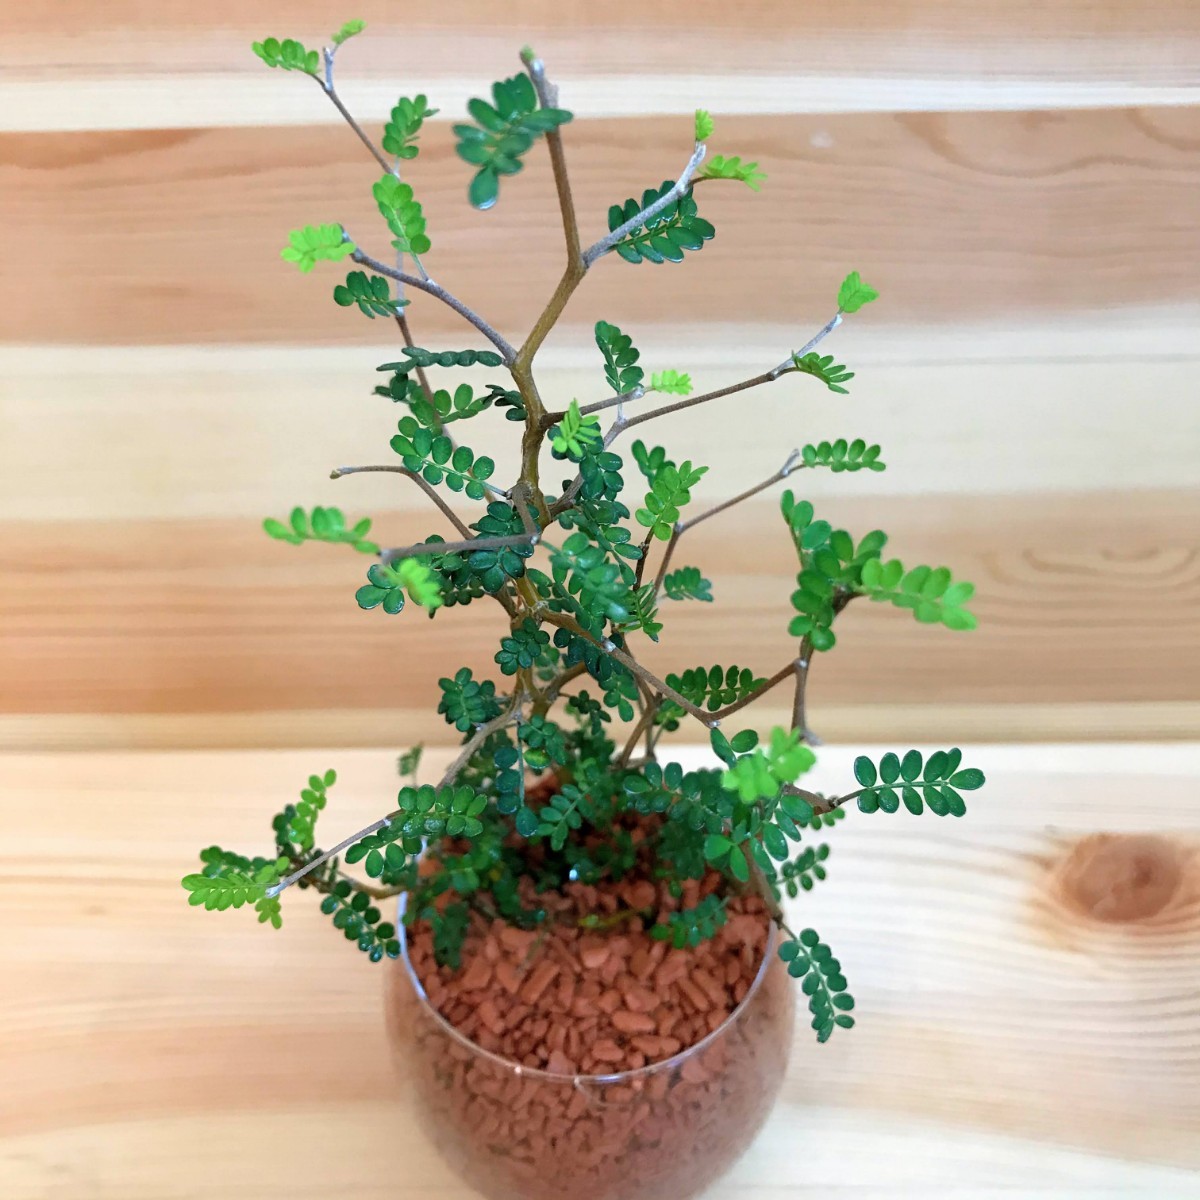 ソフォラ リトルベイビー メルヘンの木 ハイドロカルチャー 観葉植物